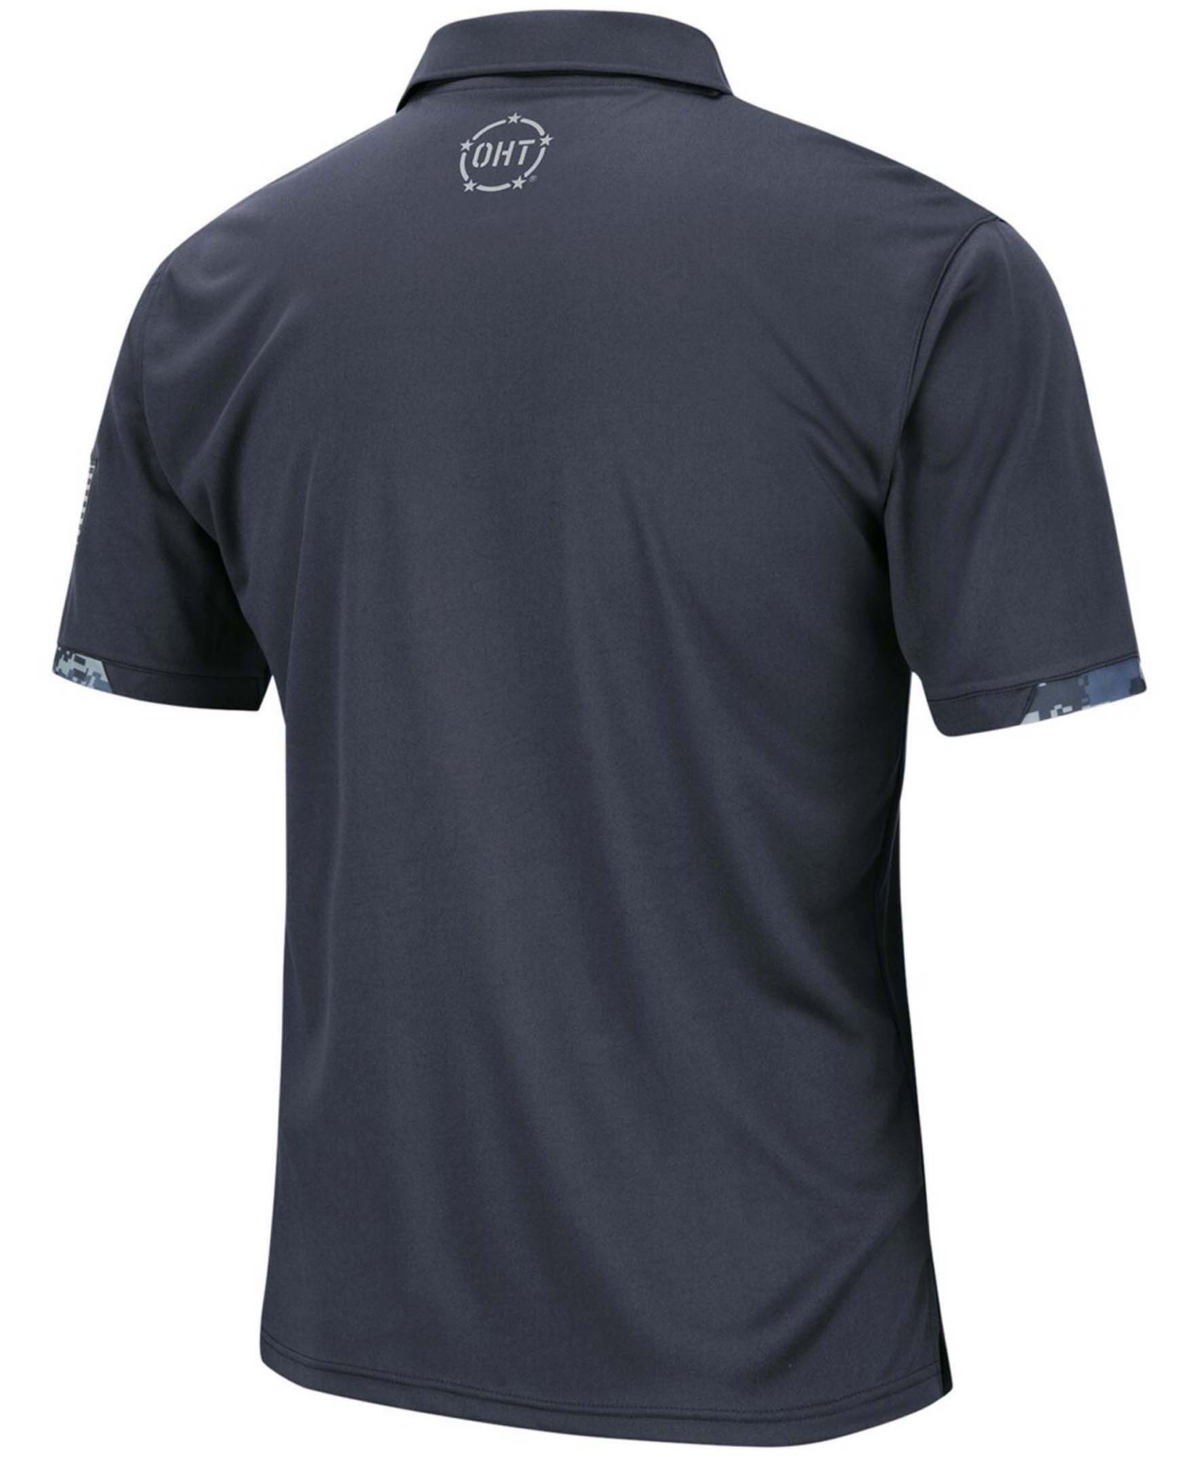 Shop Colosseum Men's Charcoal Virginia Tech Hokies Oht Military-inspired Appreciation Digital Camo Polo Shirt